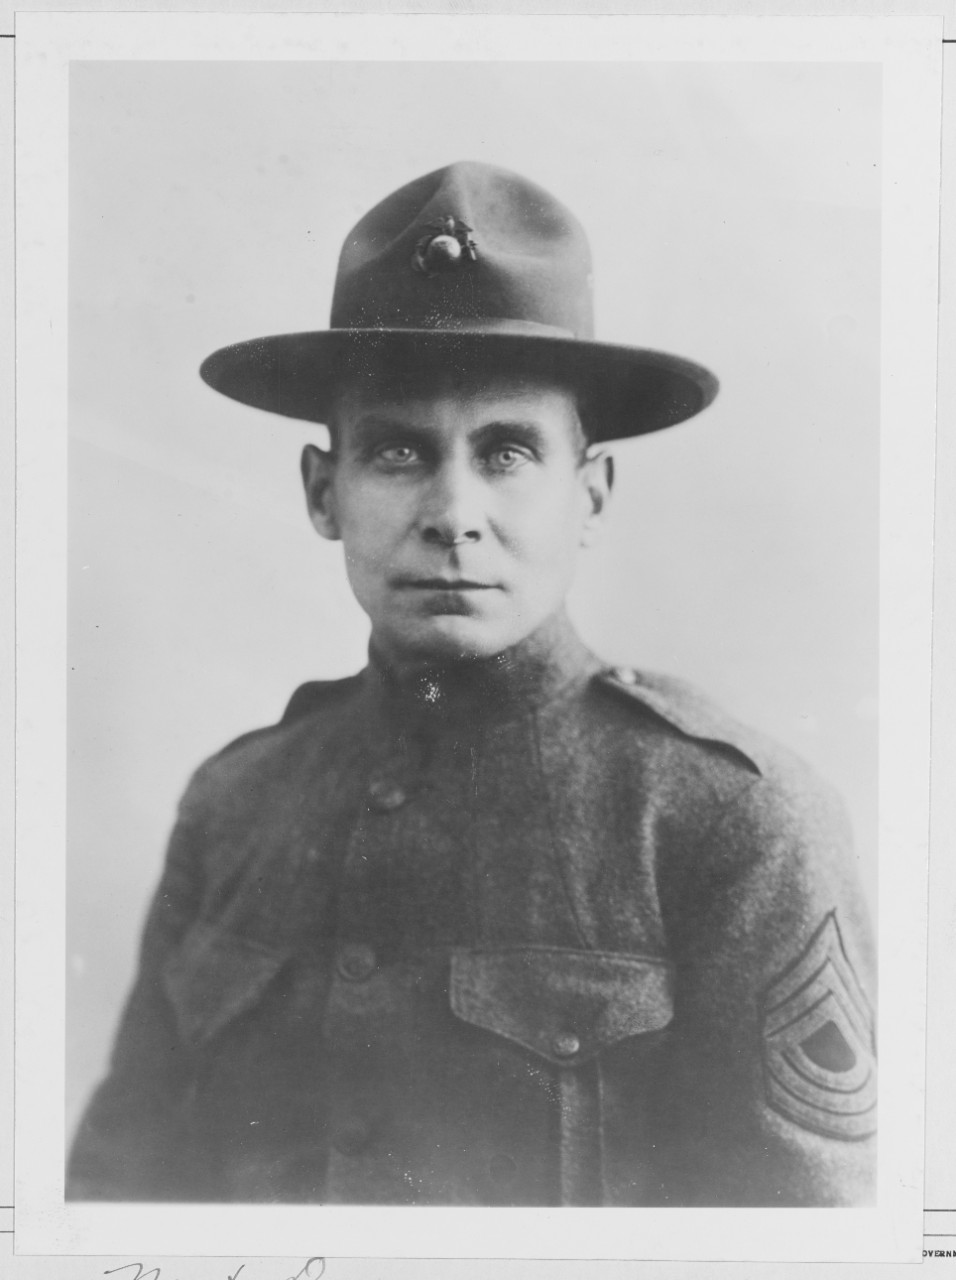 Sergeant Major John Quick, U.S.M.C.